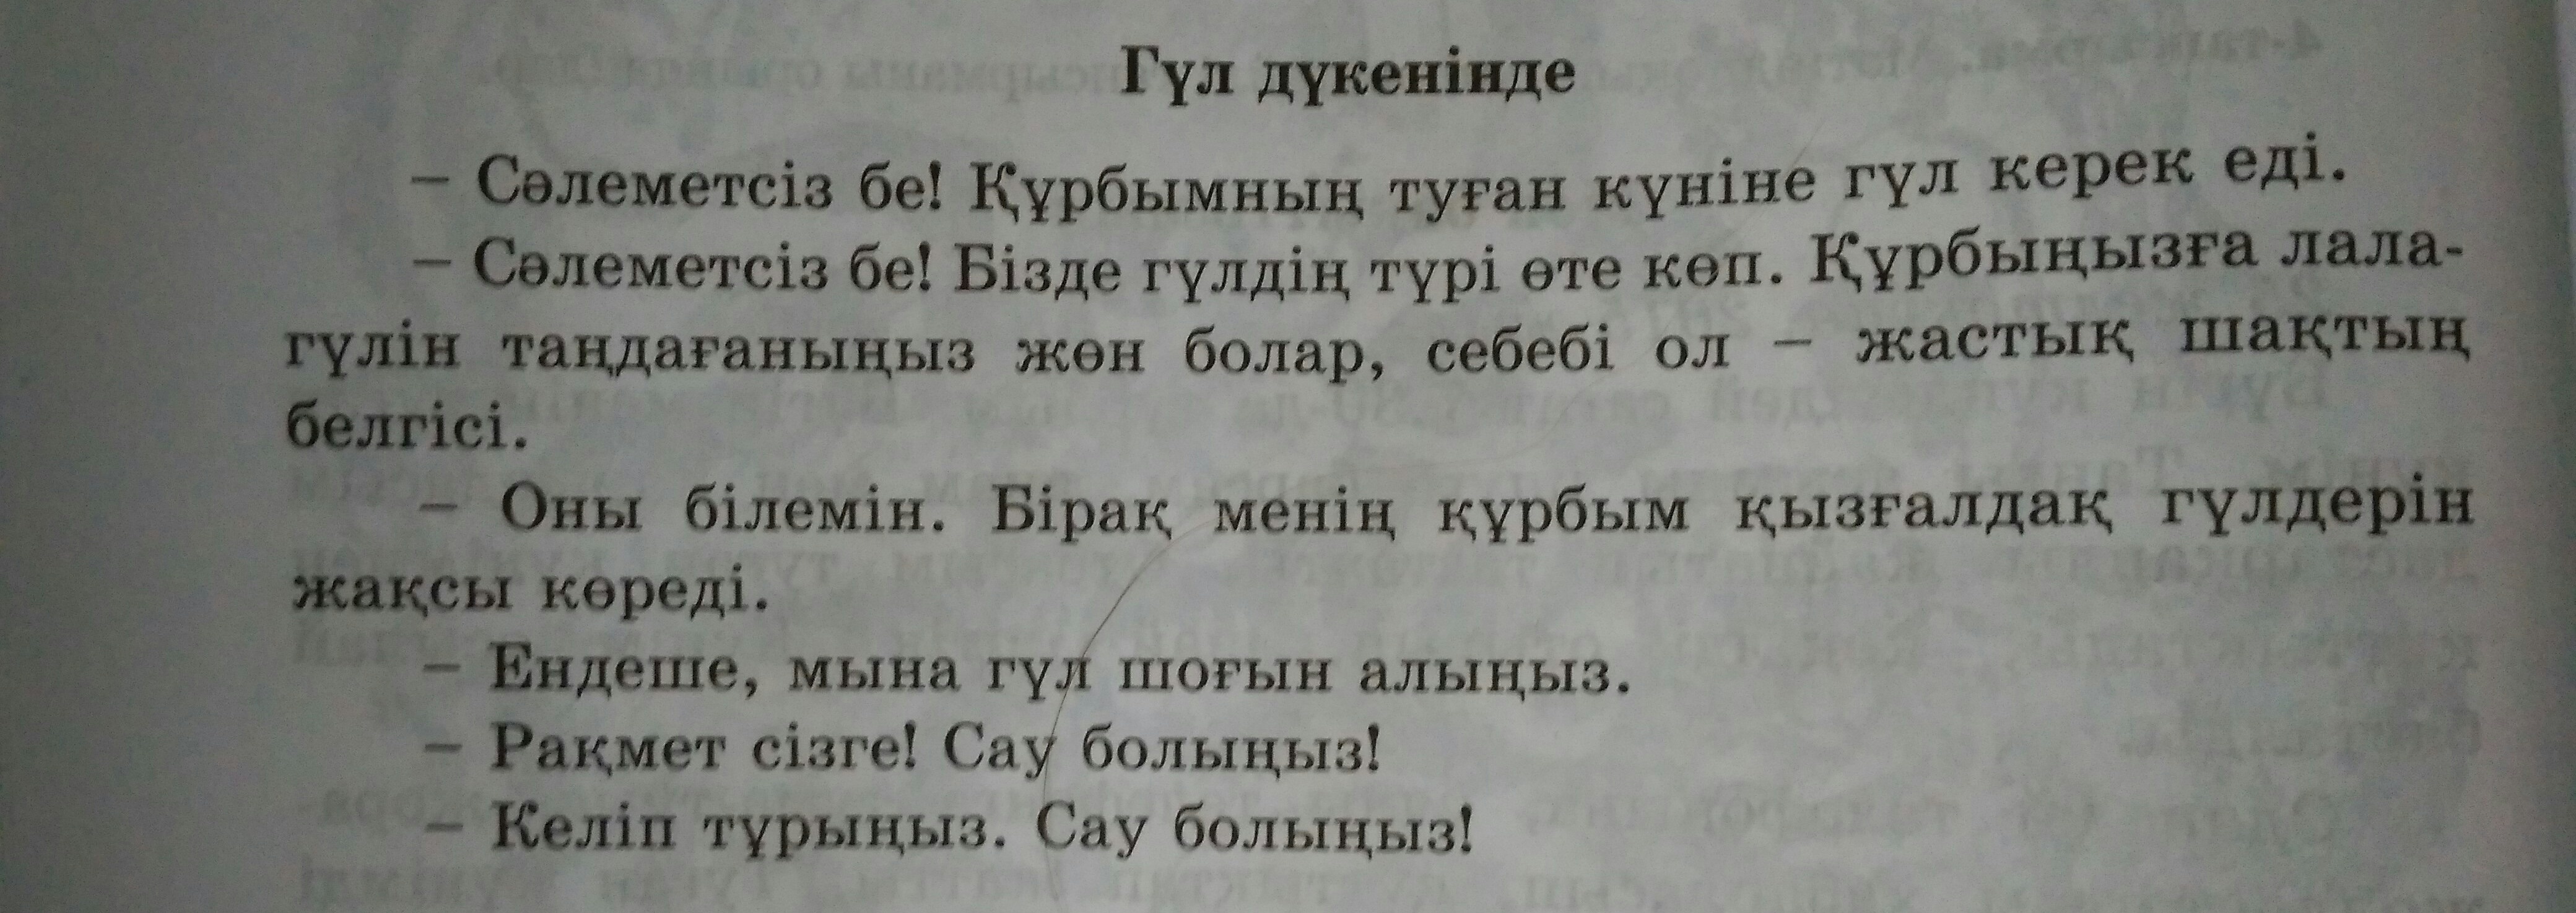 Фото перевод с кащахского на русский